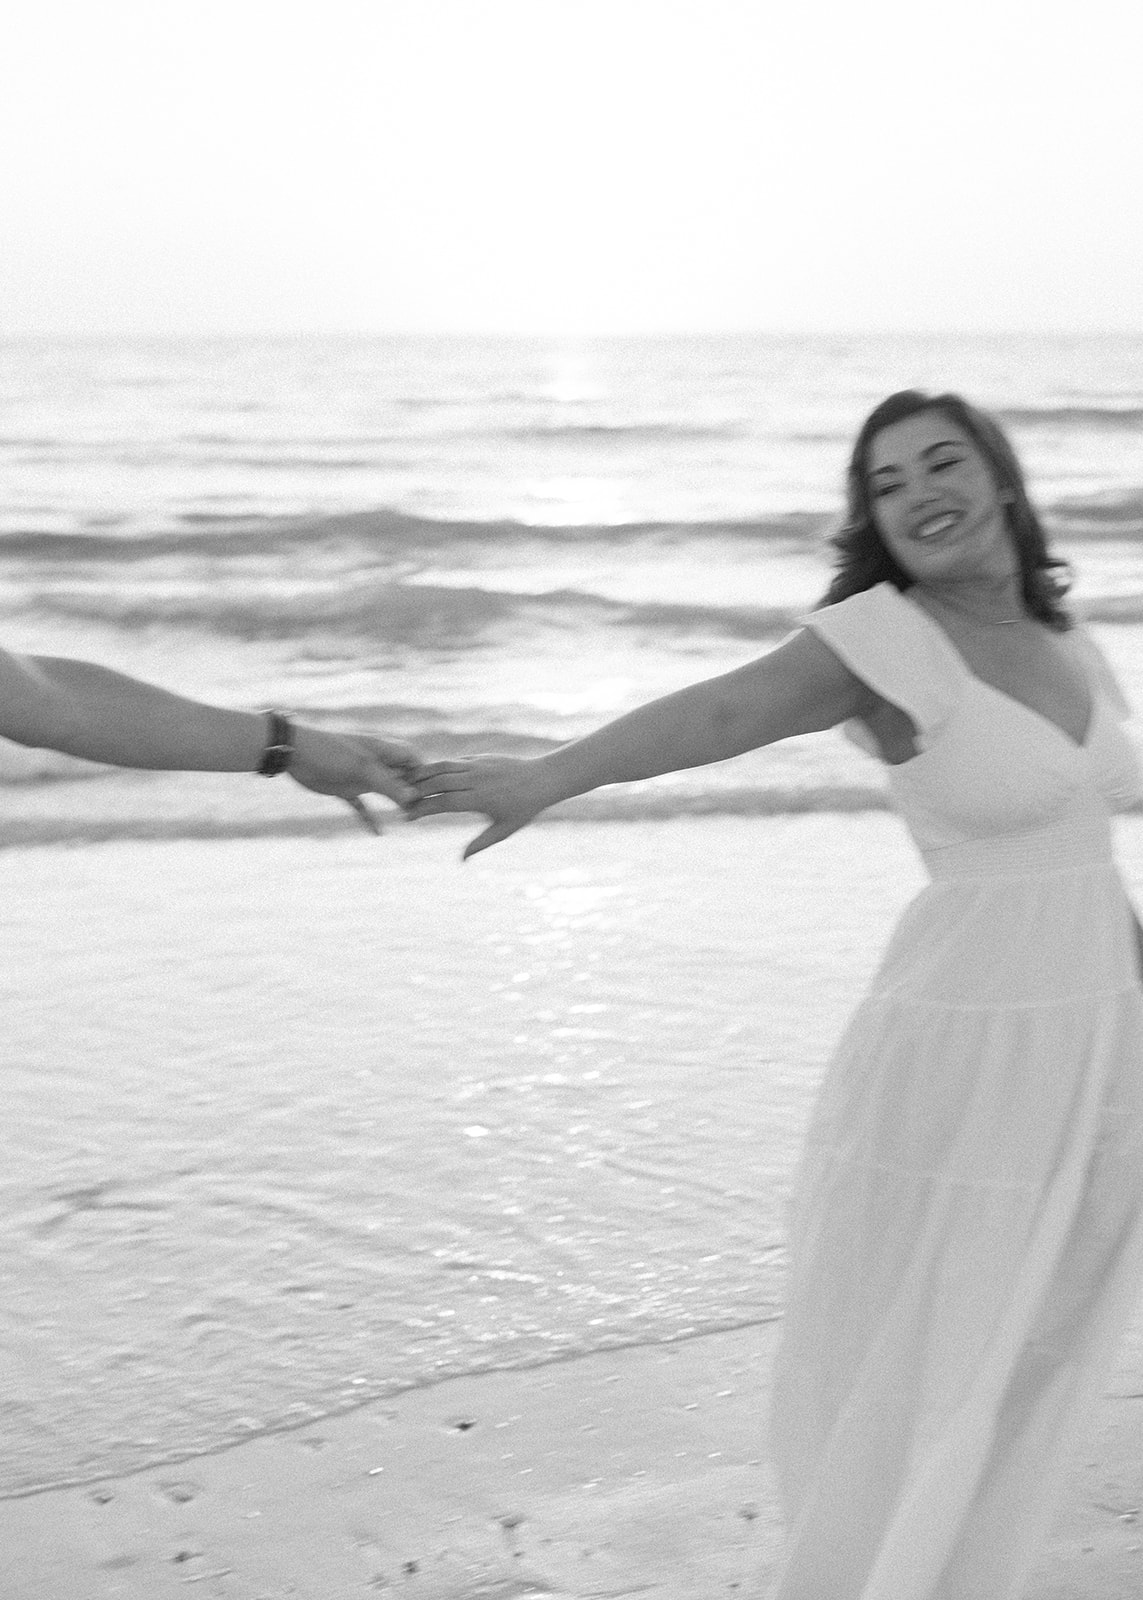 honeymoon island golden hour engagement pictures